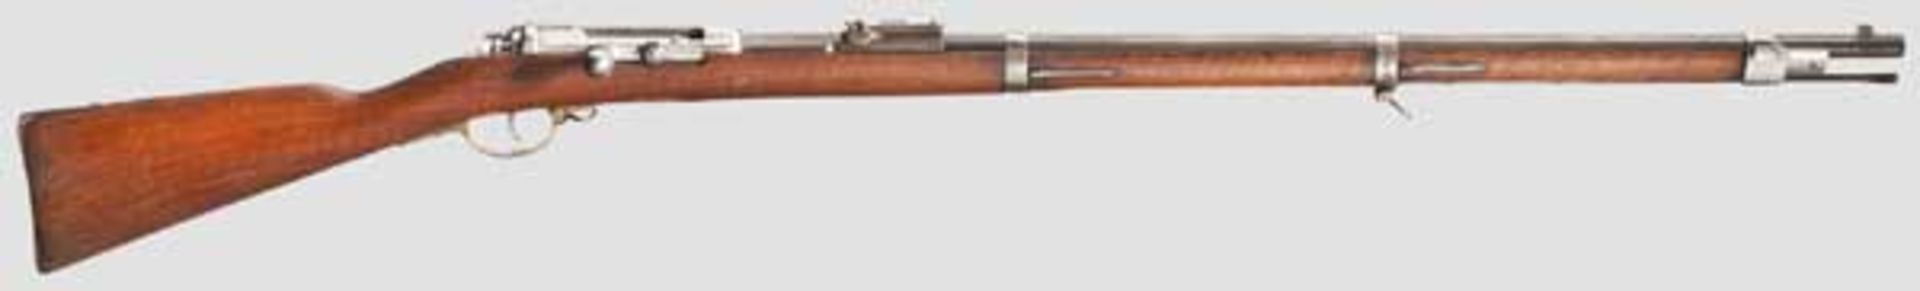 Infanteriegewehr M 1871, OEWG Kal. 11 mm, Nr. 992P. Verschluss, Schaft und Beschläge Nr. 85193.